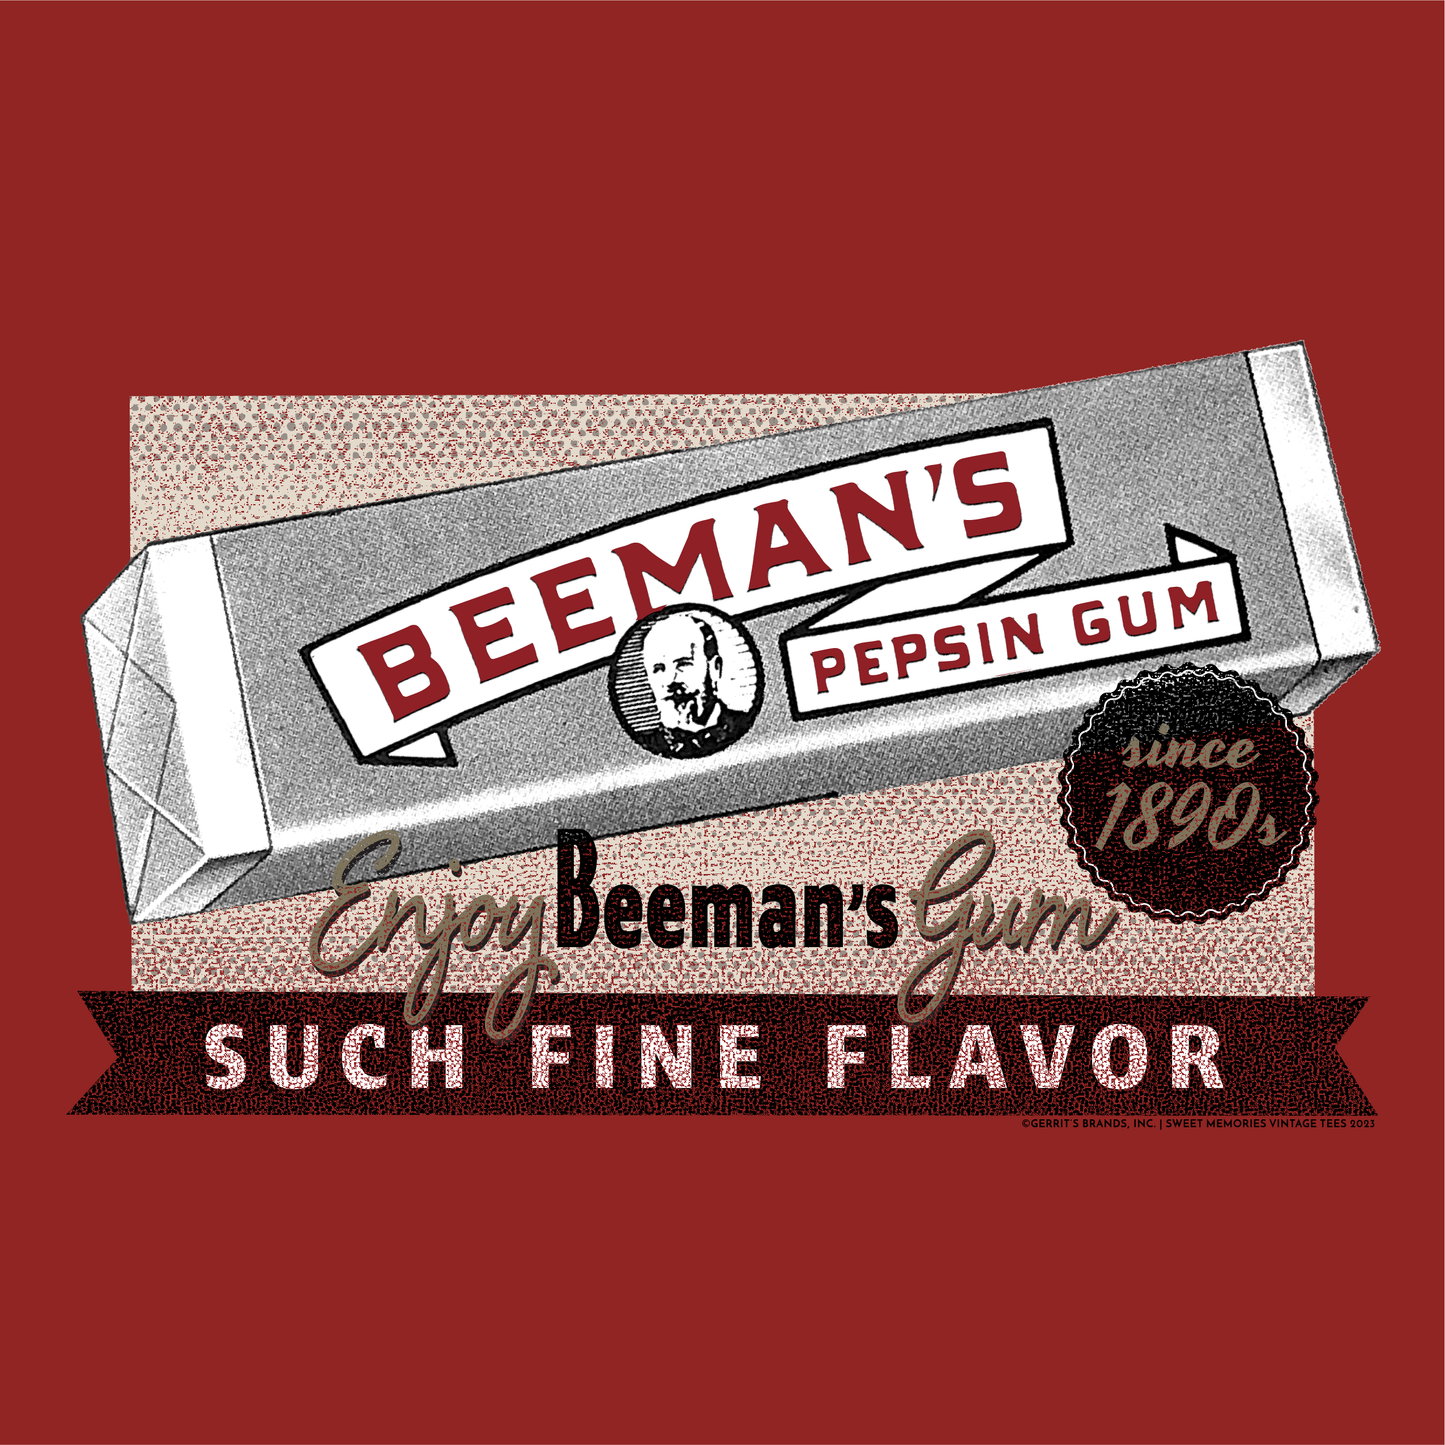 Beemans Enjoy Beemans Chewing Gum Since 1890s Tee